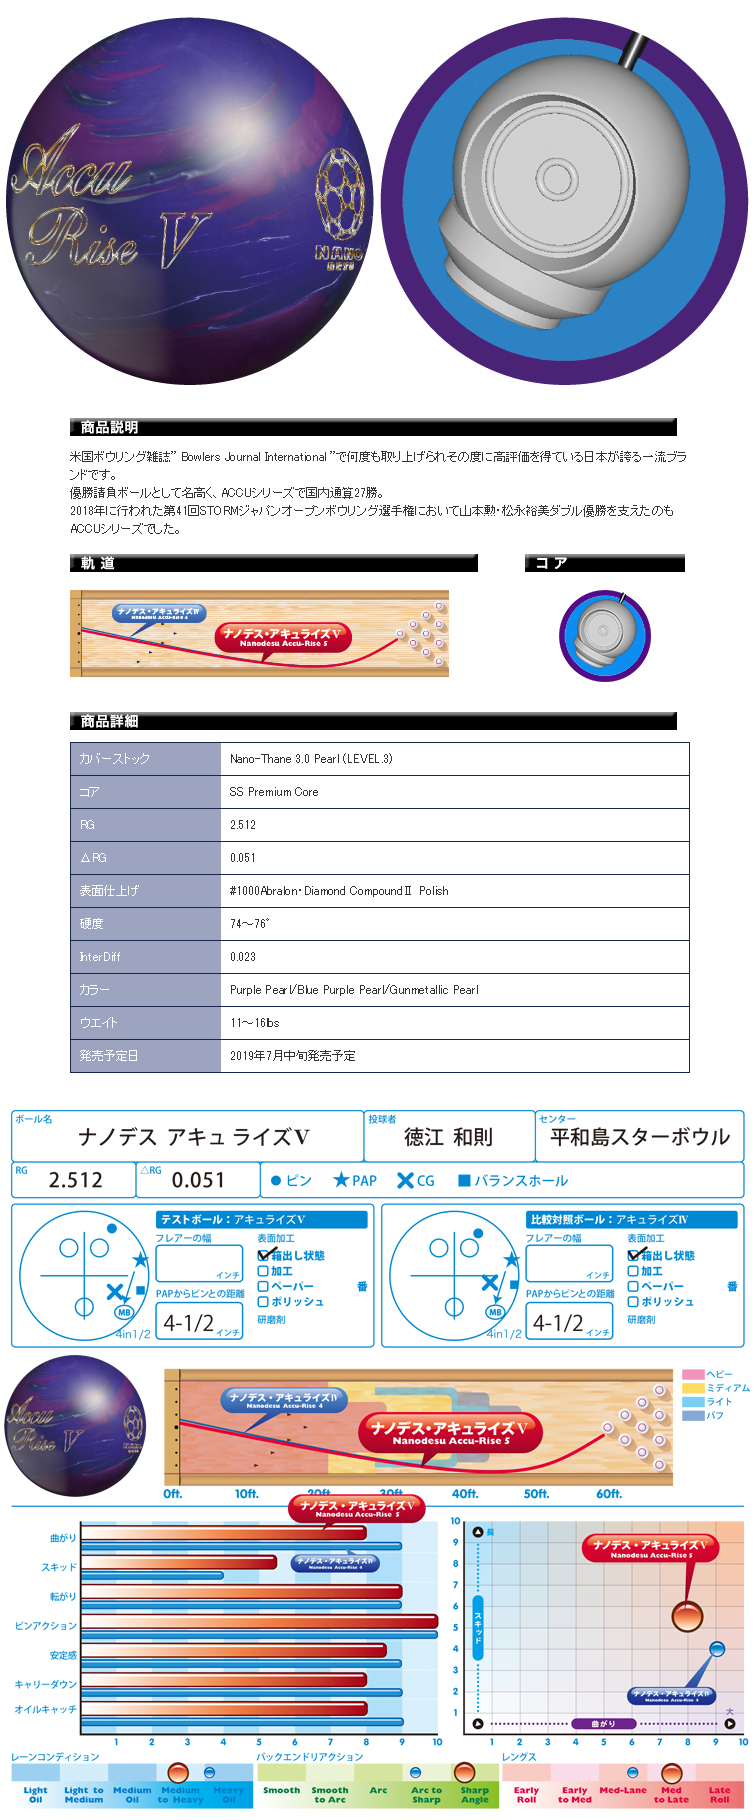 ボウリングボール Abs ナノデス アキュライズ5 Nanodesu Accu Rise 5 ボール フタバプロショップオンライン